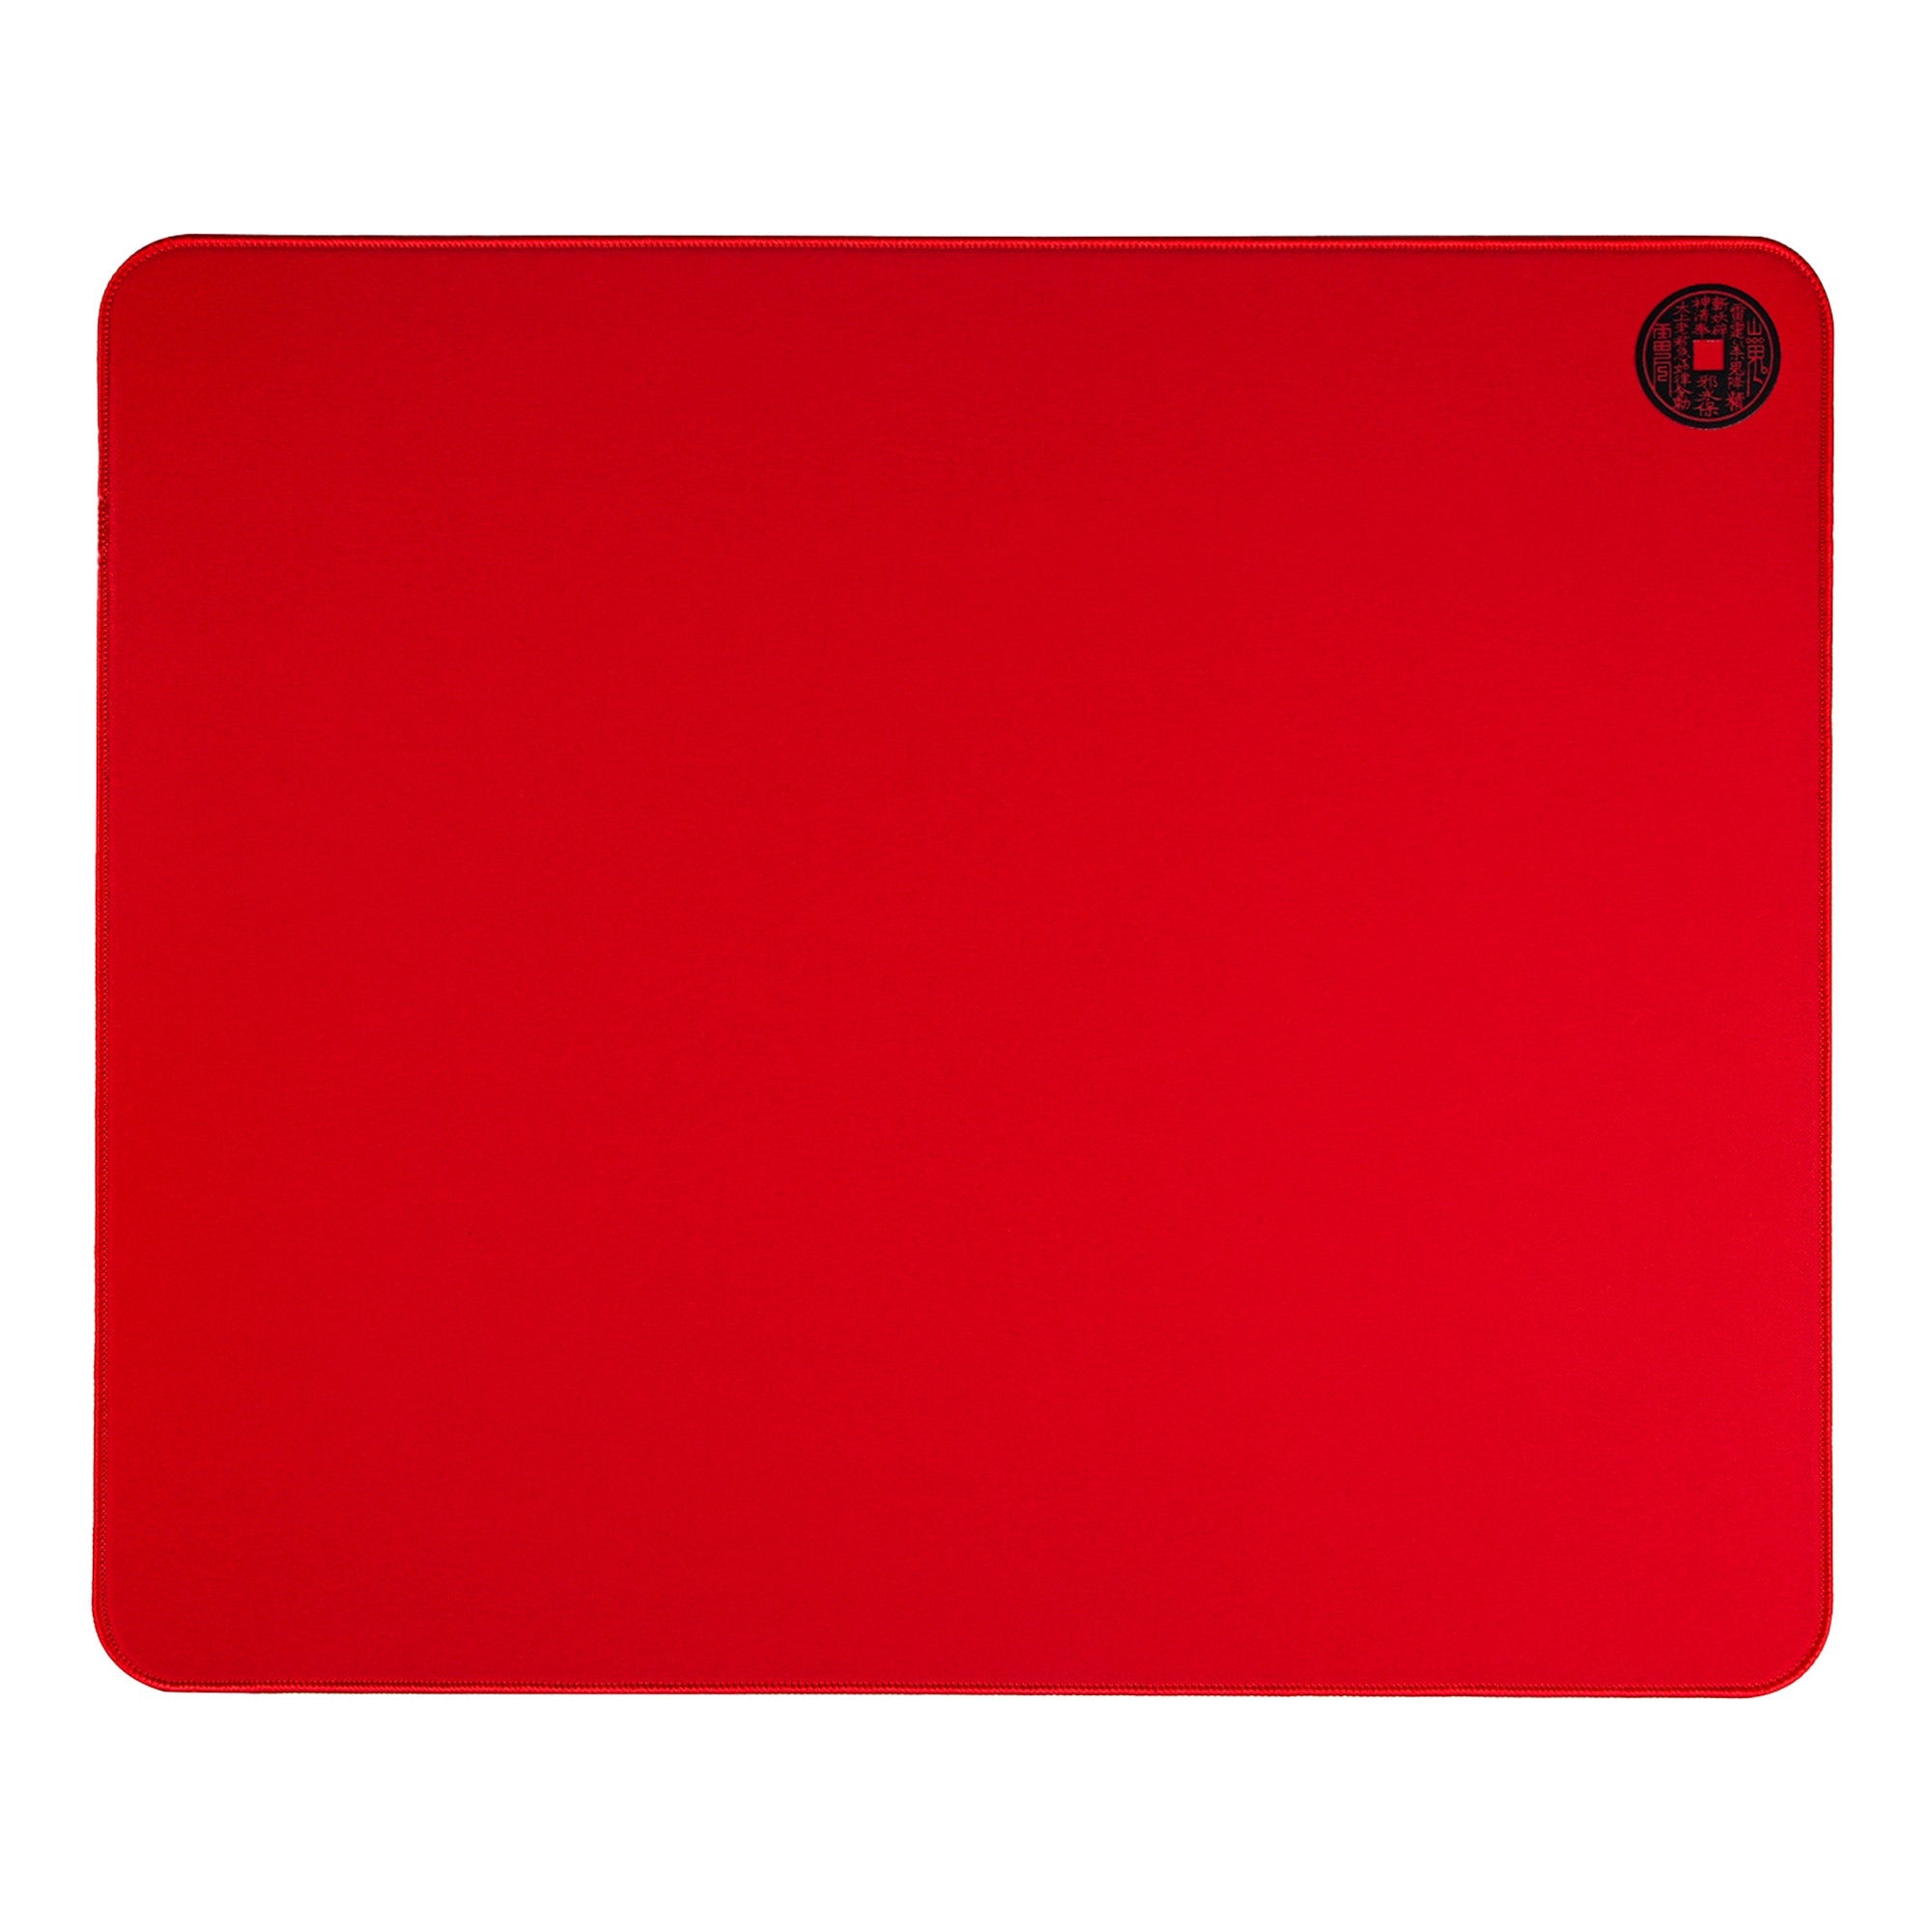 EspTiger QingSui Ya Sheng Red | Large Gaming Mousepad